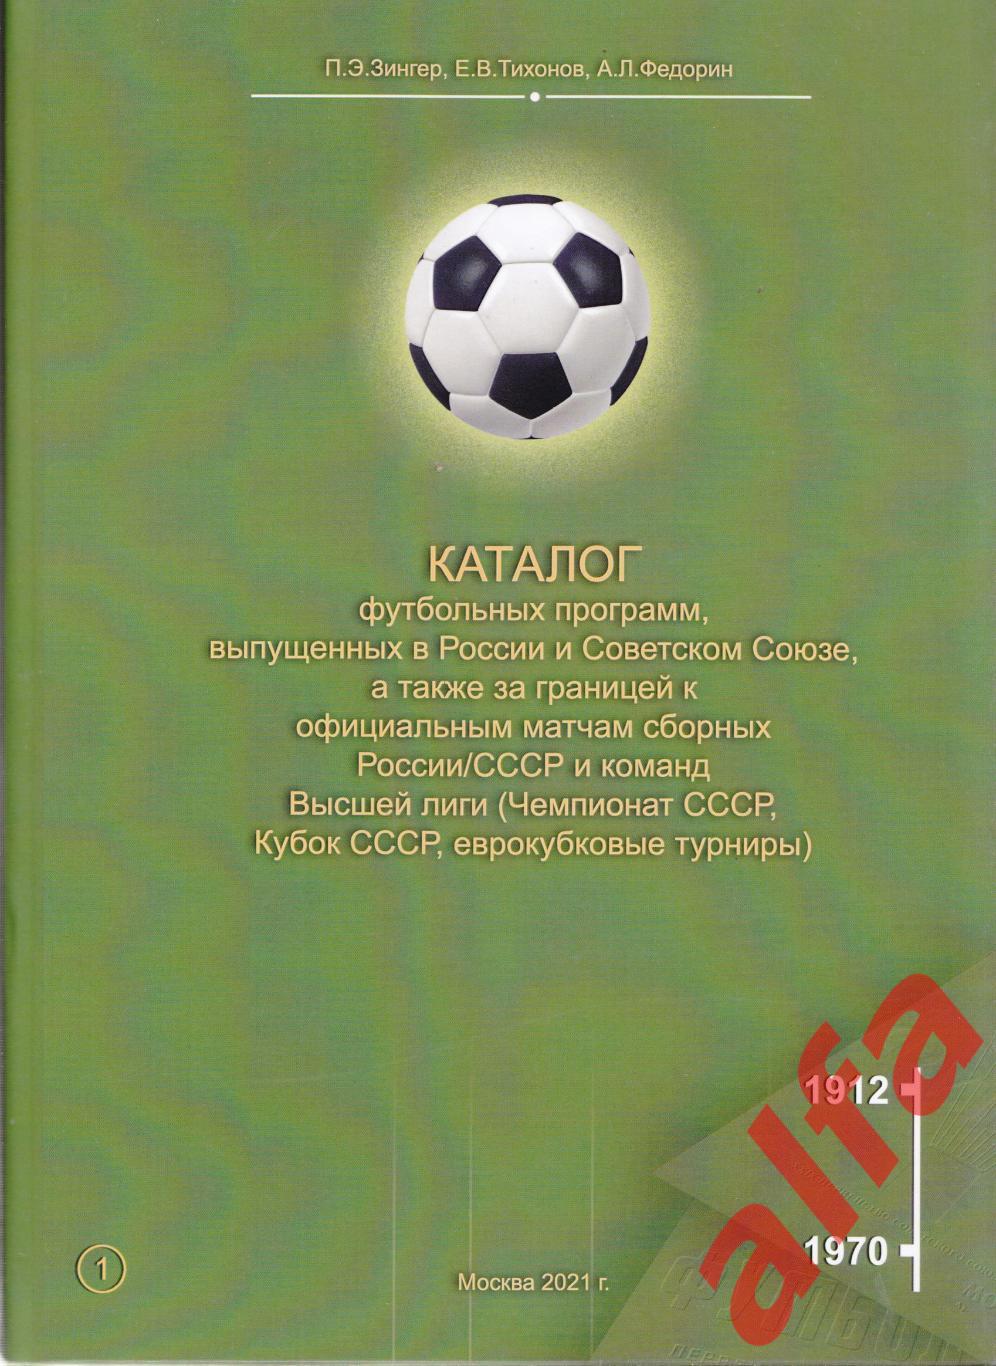 Каталог футбольных программ (Россия-СССР). Т.1. 1912-1970